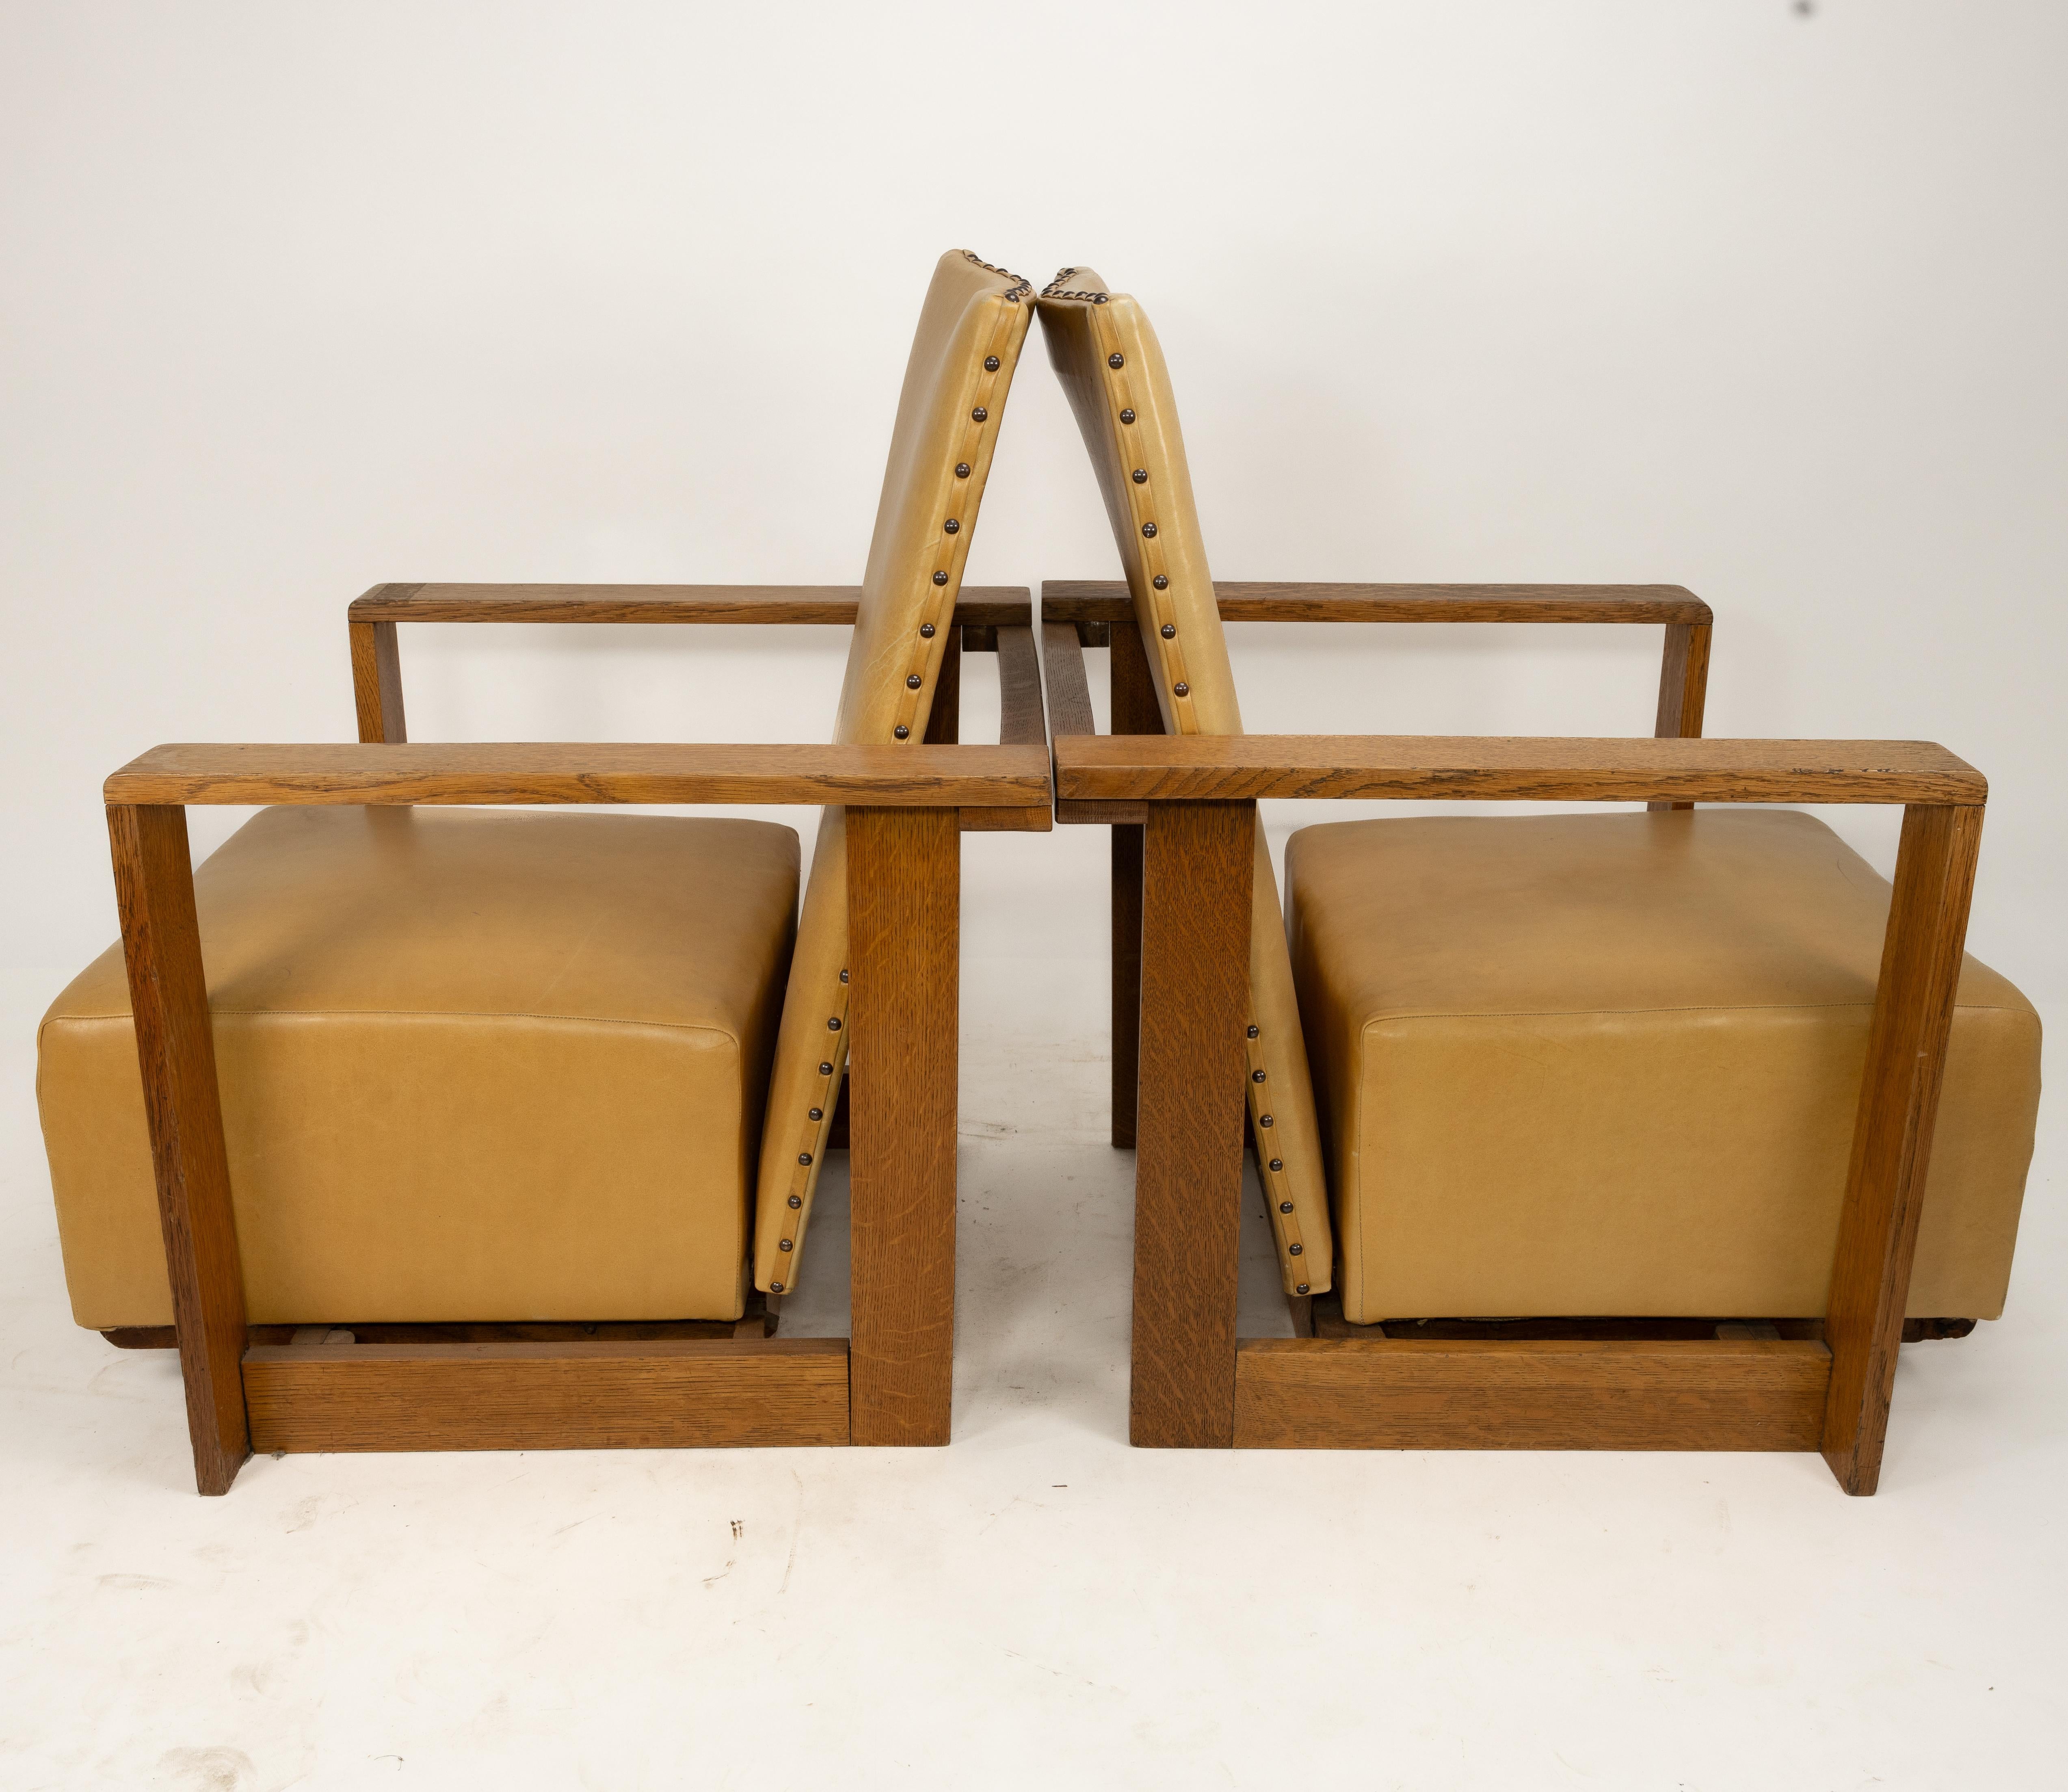 W. H. (Curly) Russell (1906-1971) pour Gordon Russell, trois fauteuils inclinables en chêne, conçus en 1930, tous retapissés professionnellement en cuir fauve. Le mécanisme d'inclinaison fonctionne sur deux rails qui permettent au siège d'avancer et